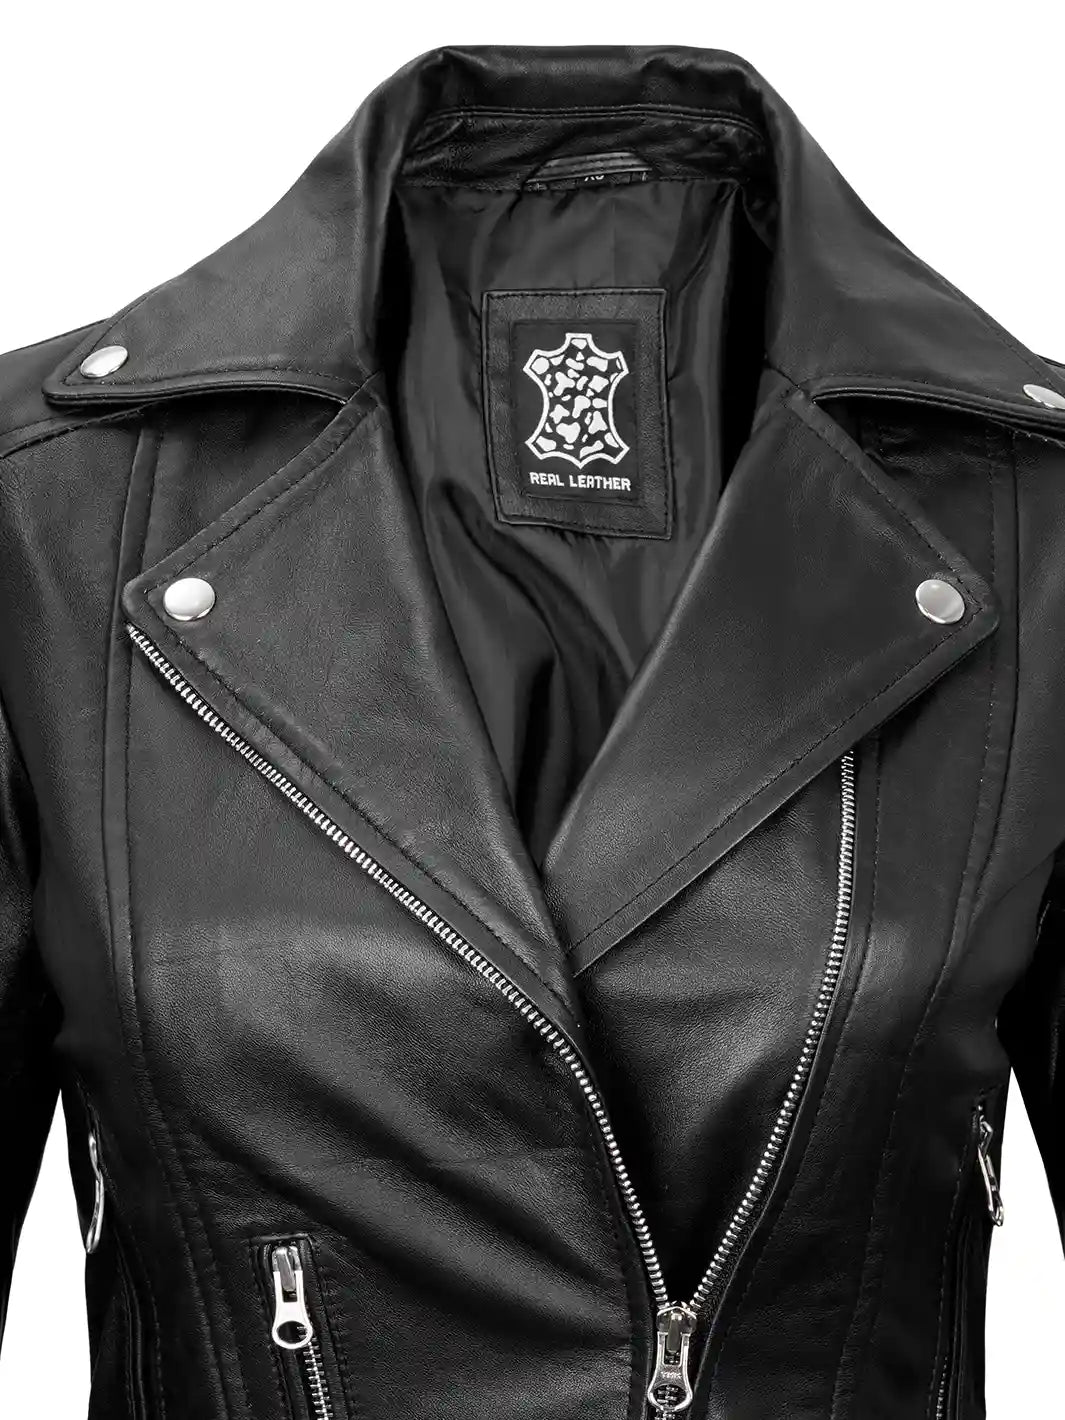 Womens leather moto jacket